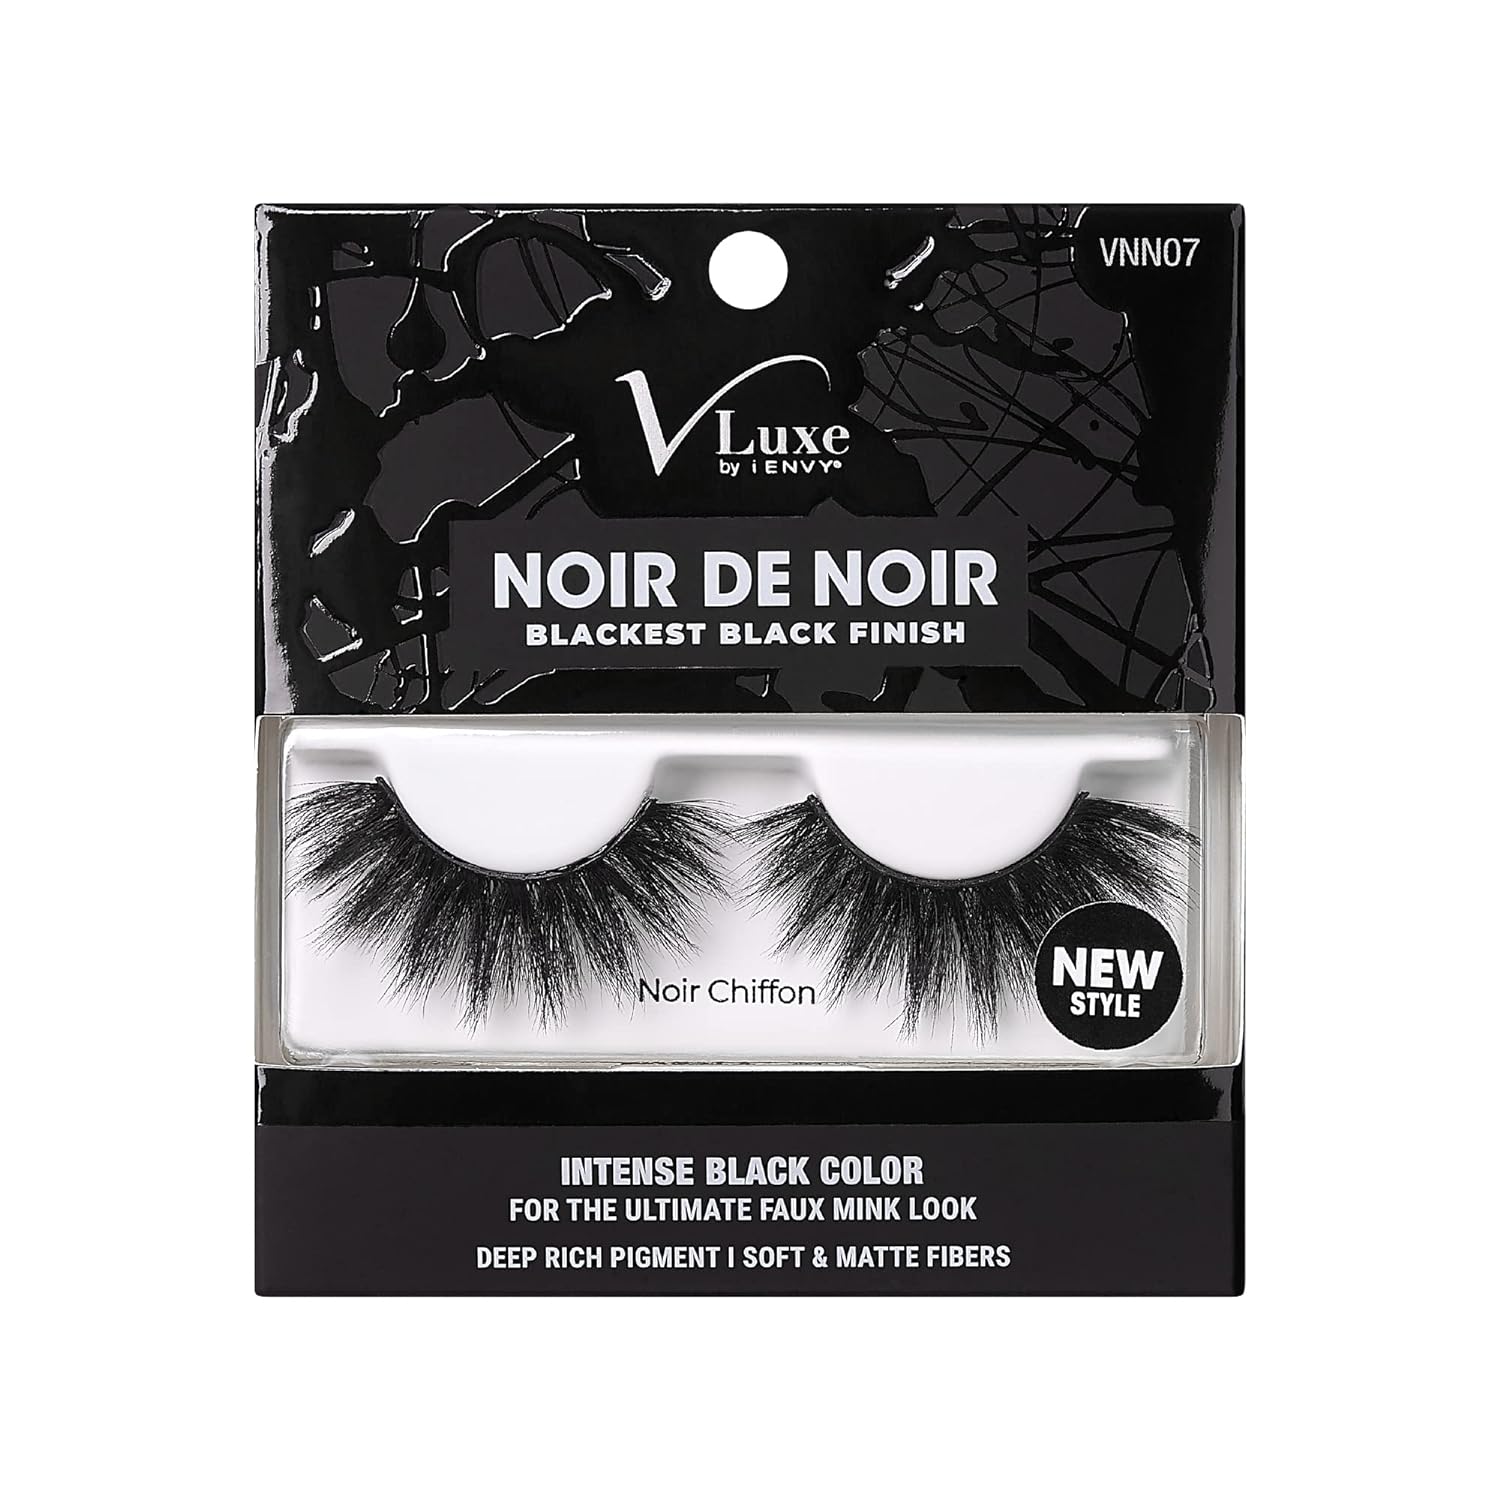 Vluxe by Ienvy Noir De Noir Blackest Black Finish - Noir Chiffon, 1.13 Oz